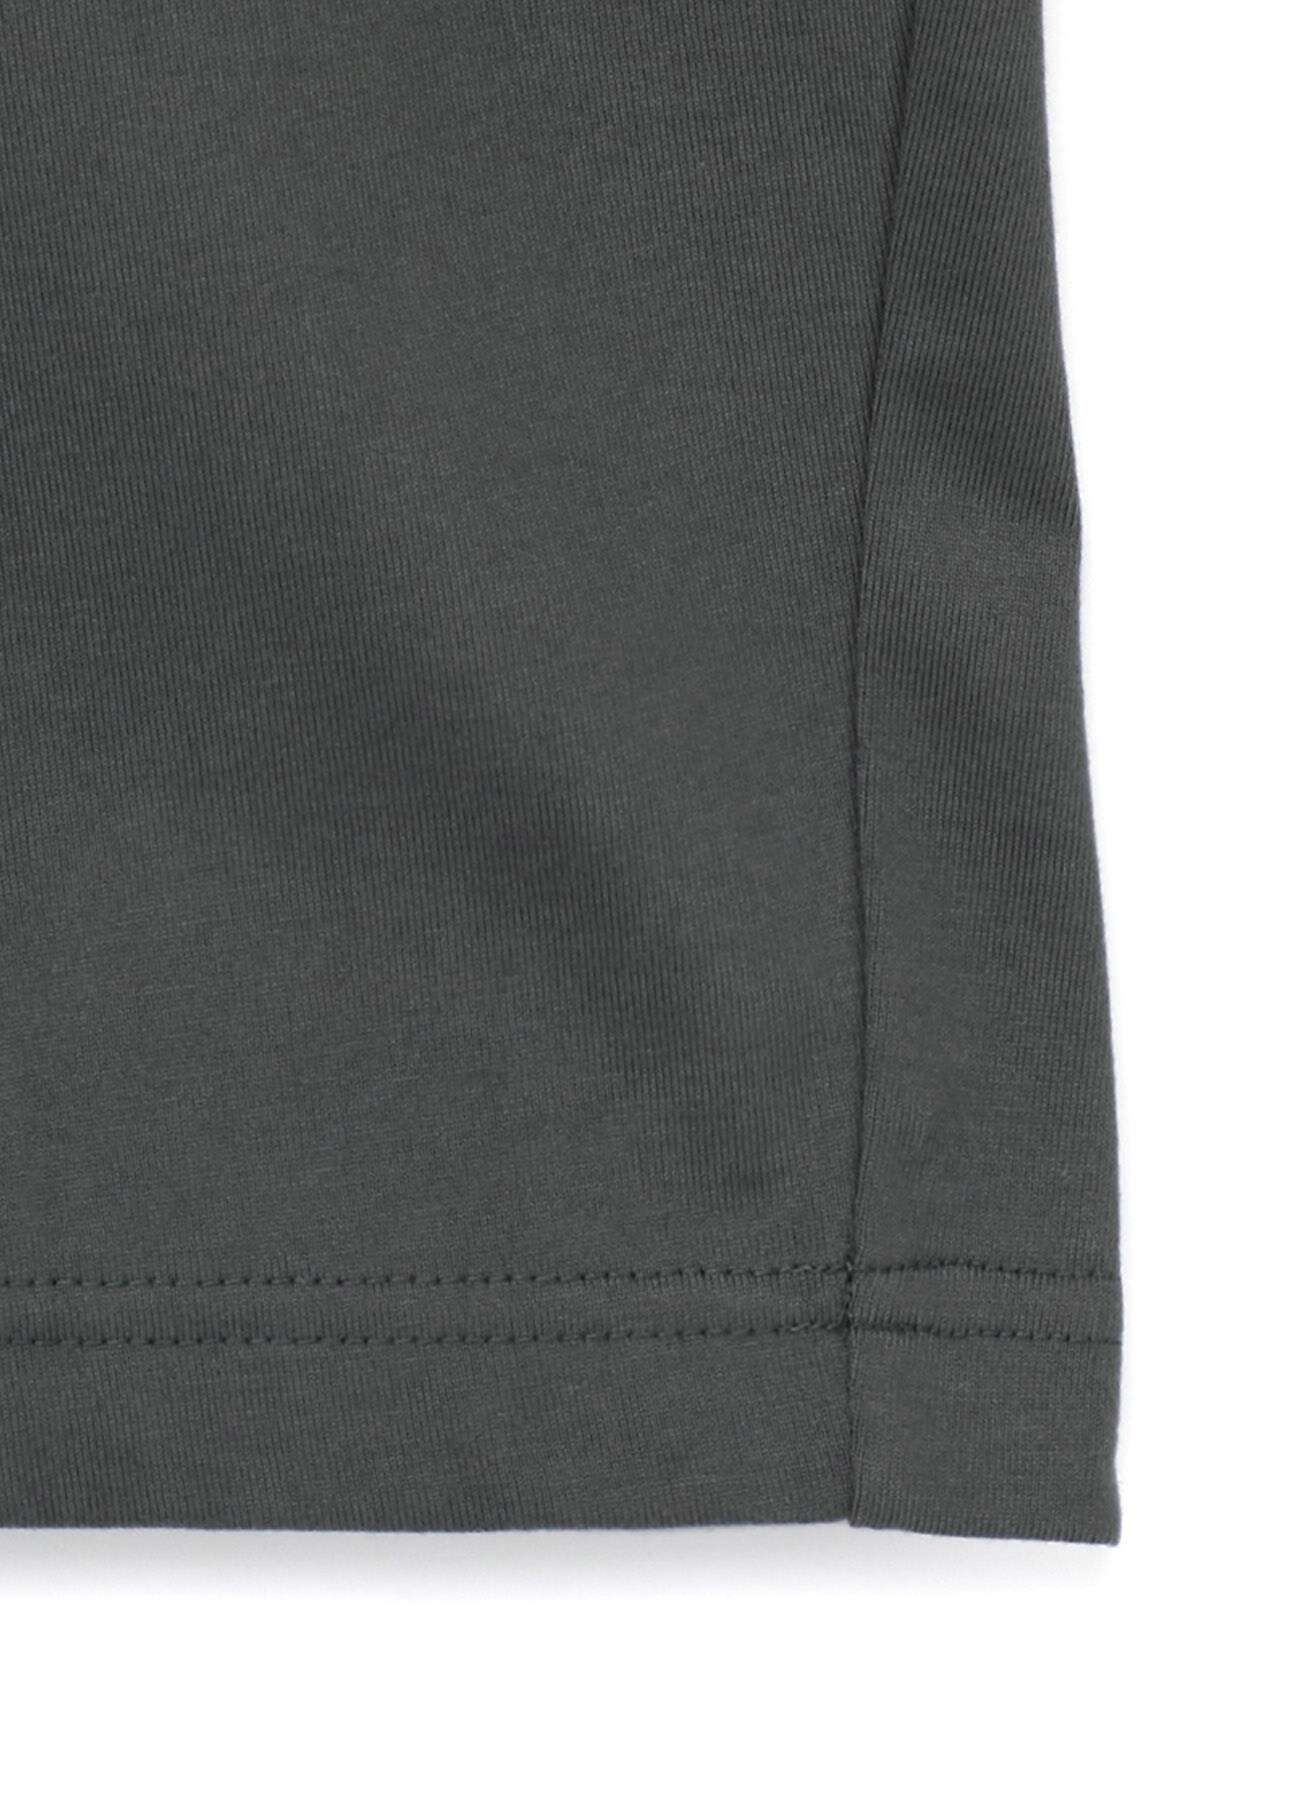 40/2 Cotton Plain stitch Shoulder Open T-Shirt(S Grey): Vintage